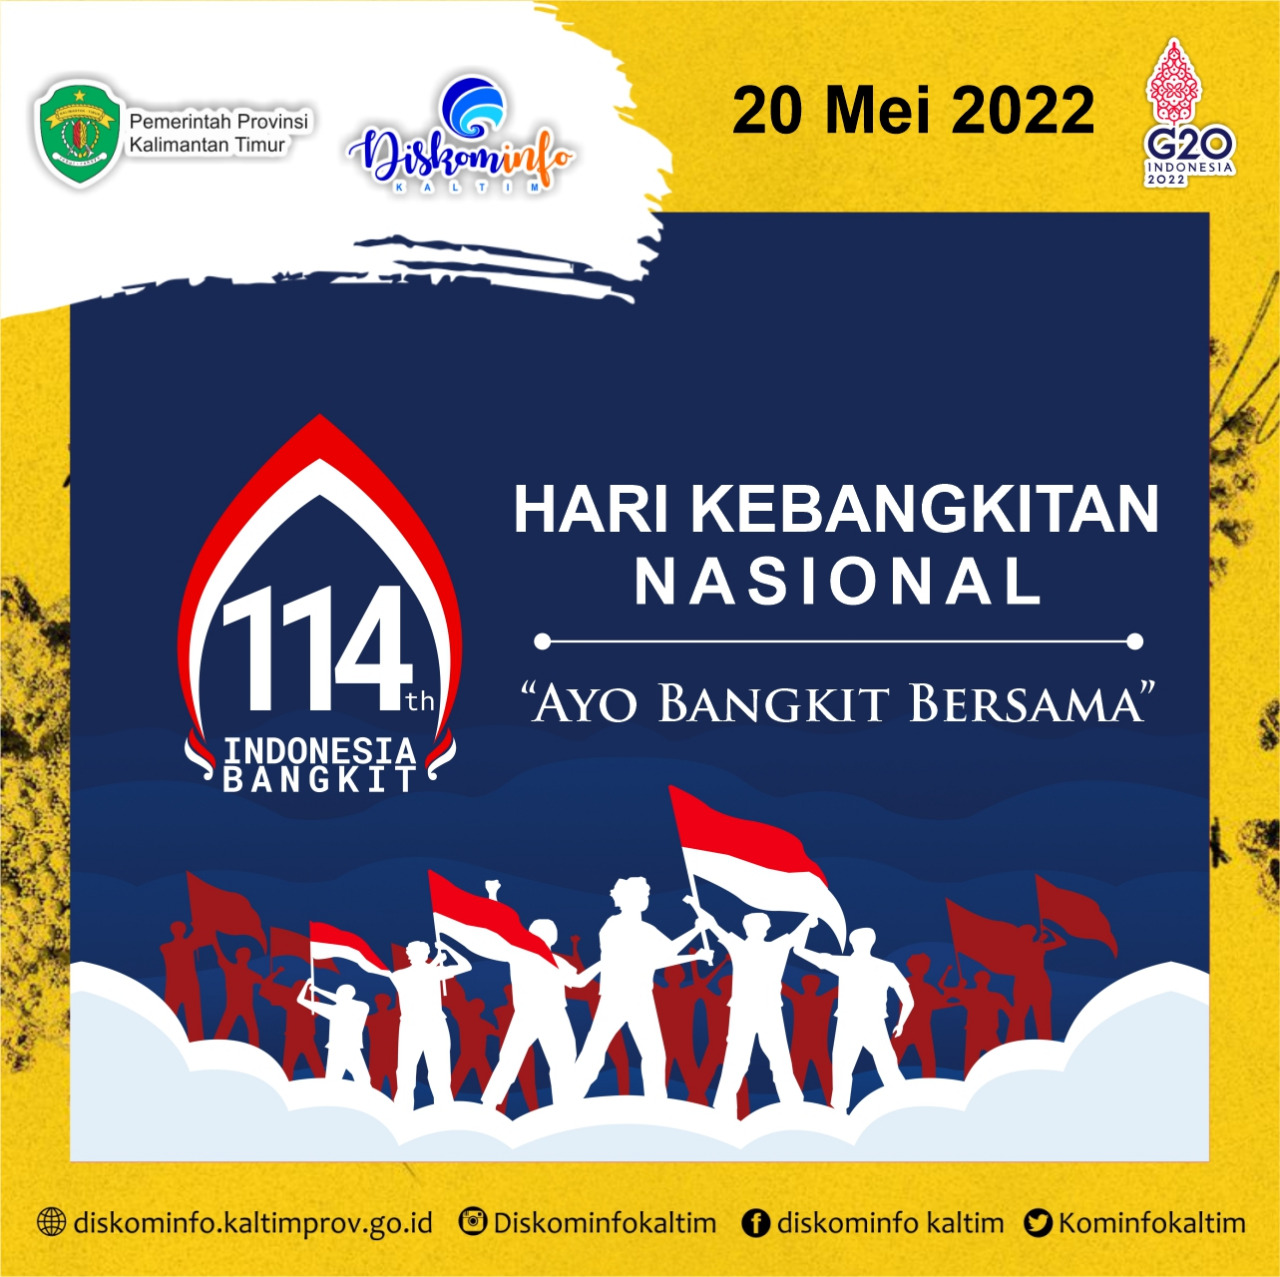 Selamat Hari Kebangkitan Nasional ke-114 tahun 2022